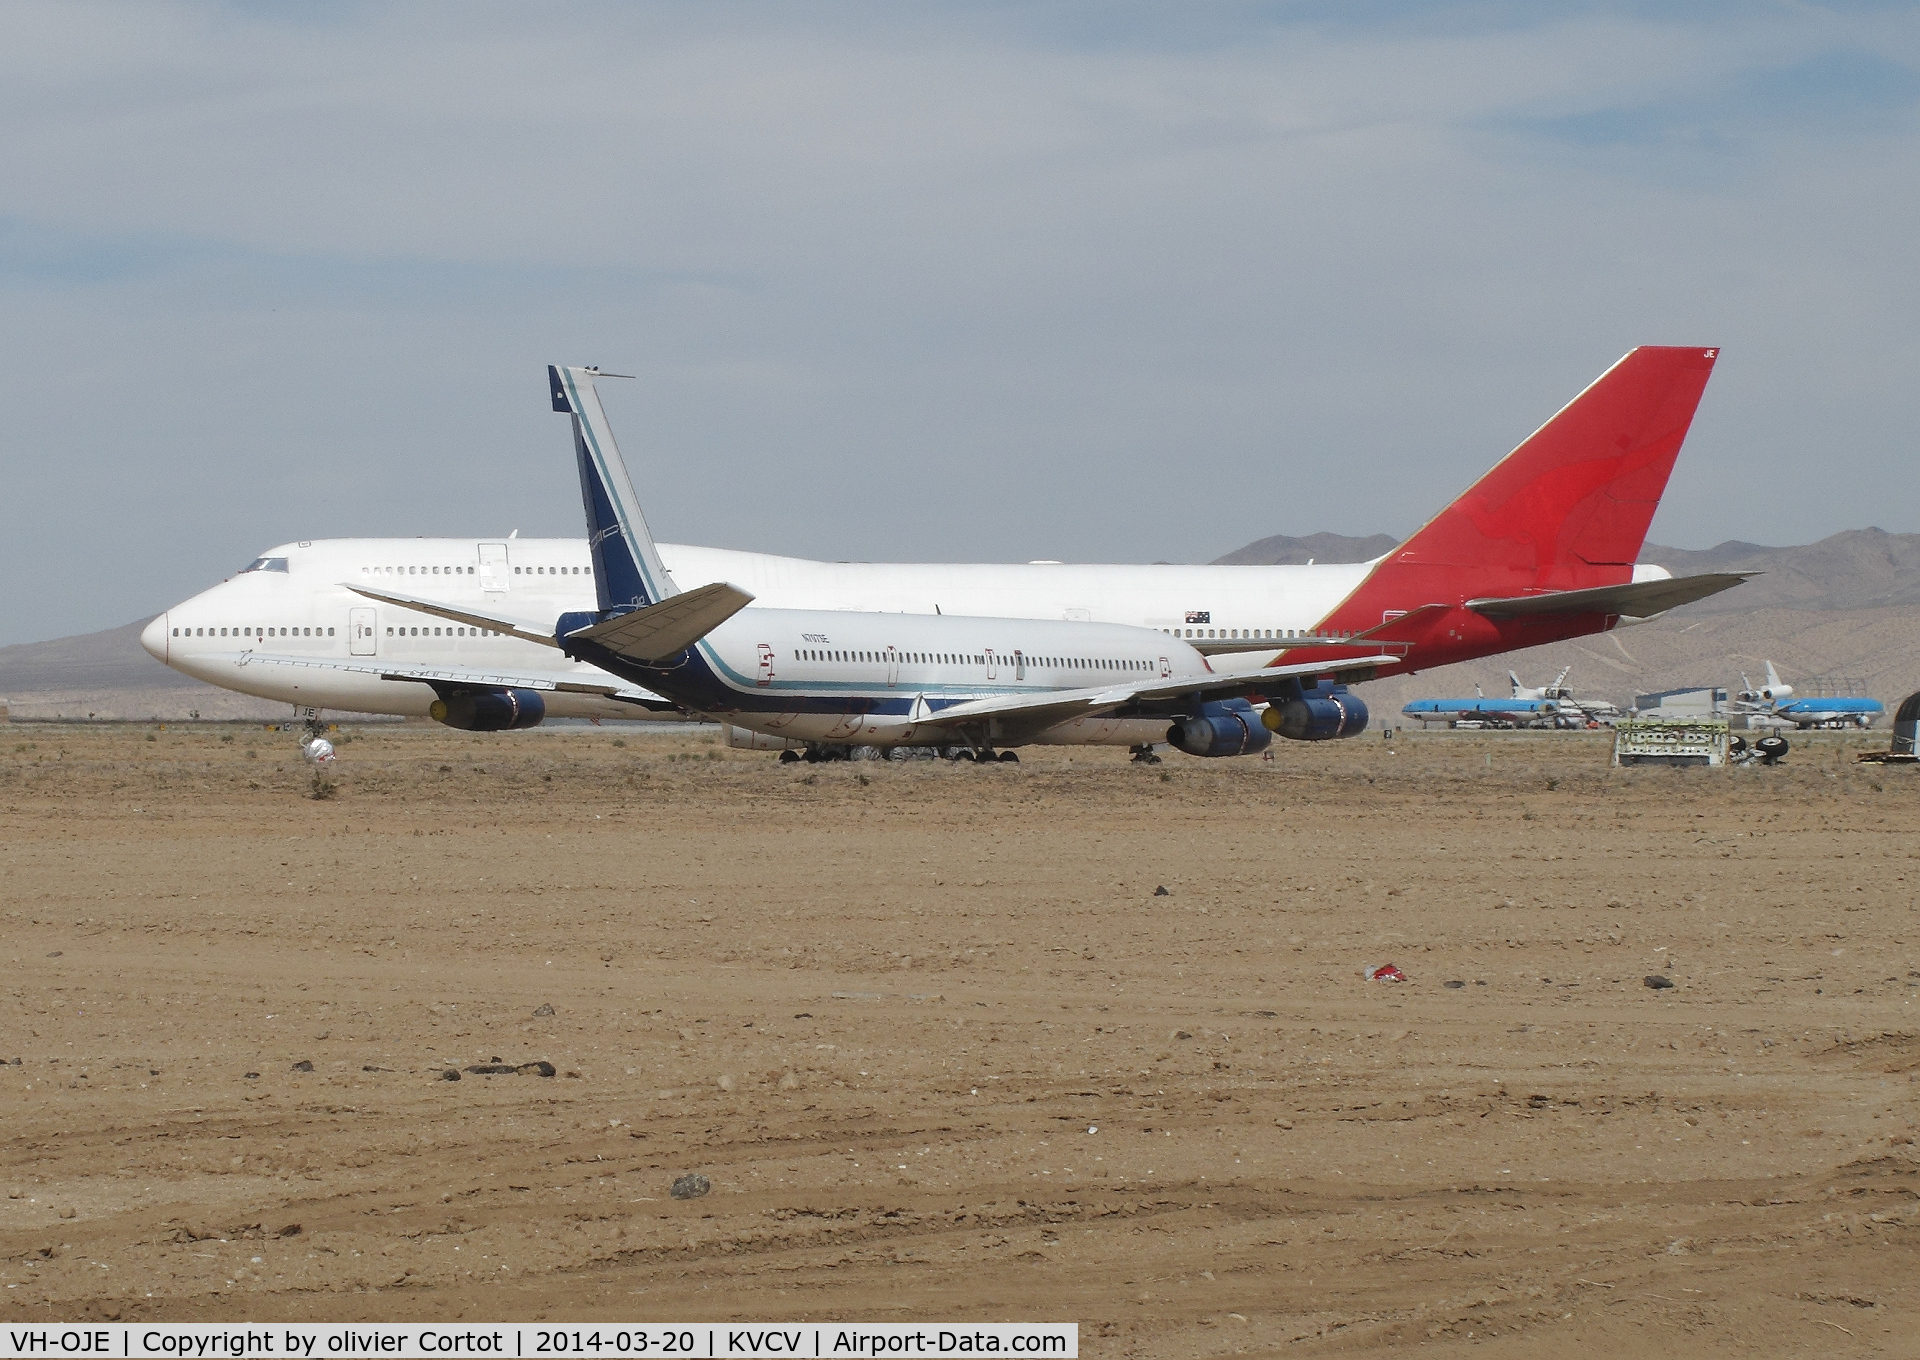 VH-OJE, 1989 Boeing 747-438 C/N 24482, now in the Californian desert